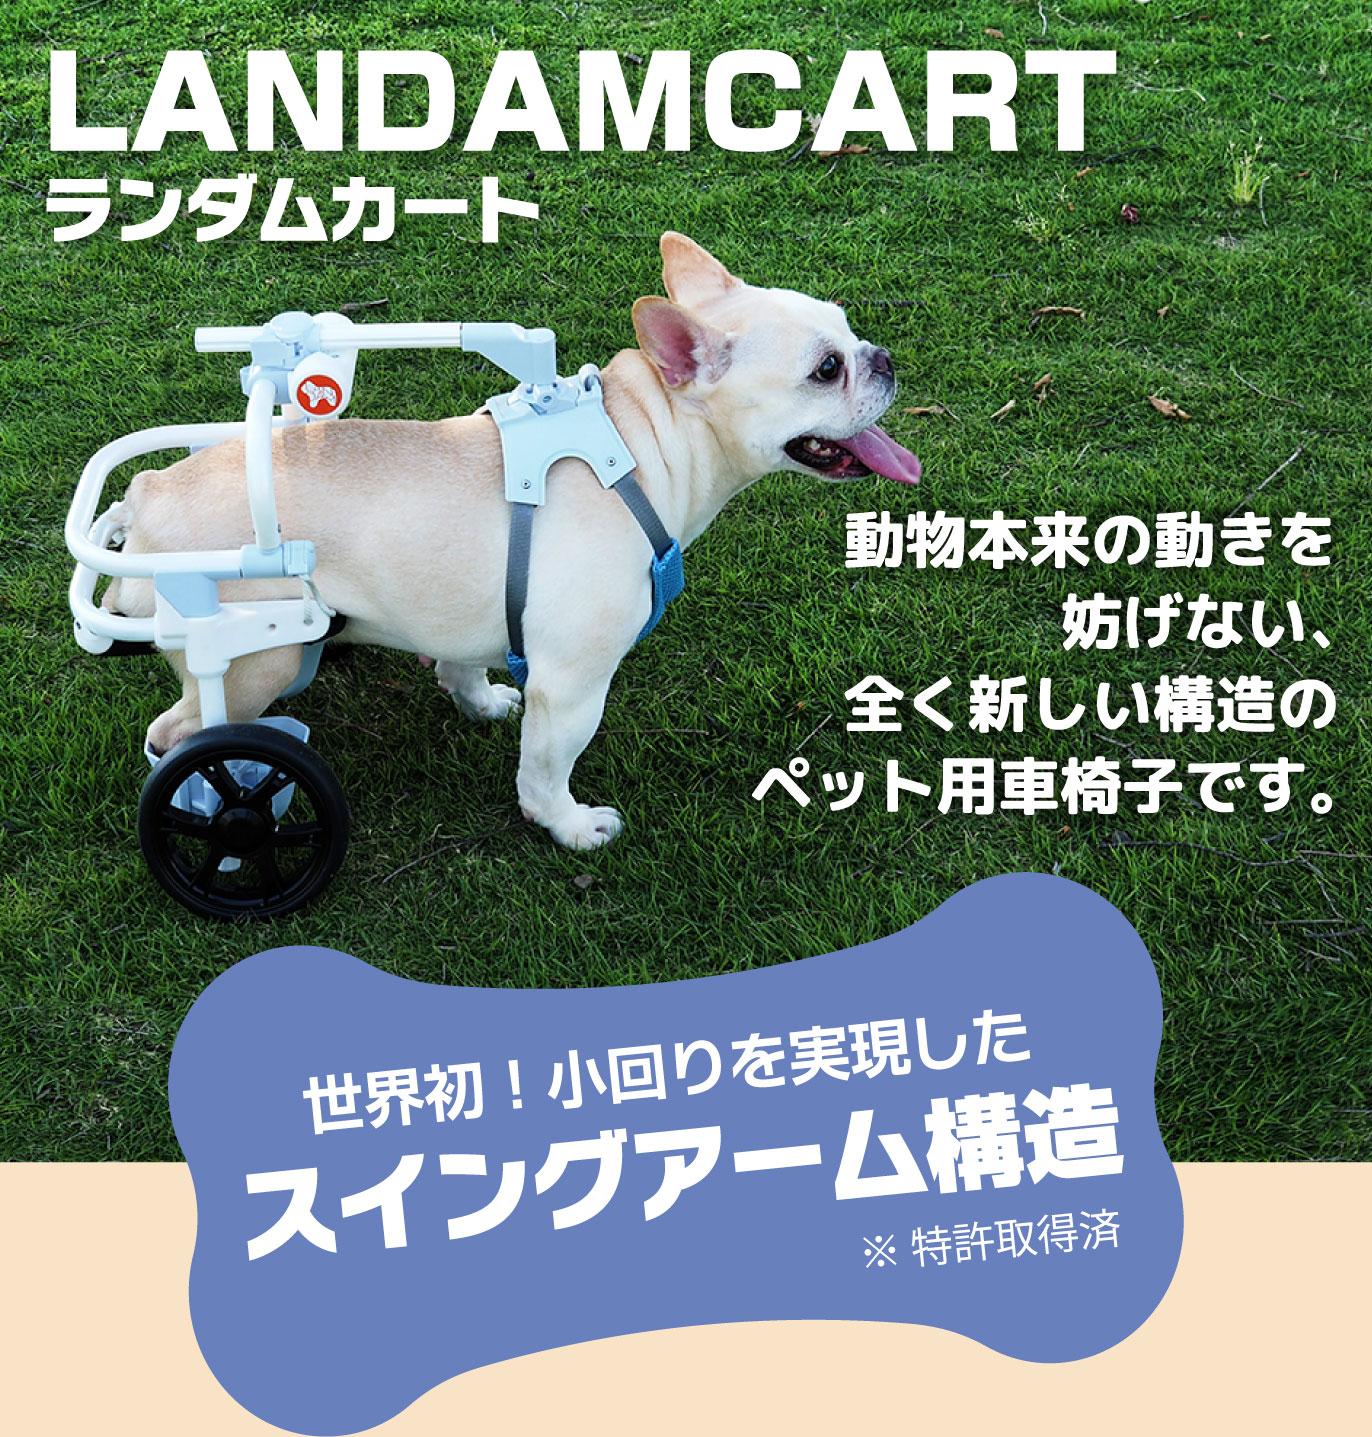 LANDAMCARTランダムカート 世界初！小回りを実現したスイングアーム構造 ※特許取得済 動物本来の動きを妨げない全く新しい構造のペット用車椅子です。 最高クラスの軽量化・体にフィット・リハビリにも・選べるパーツ